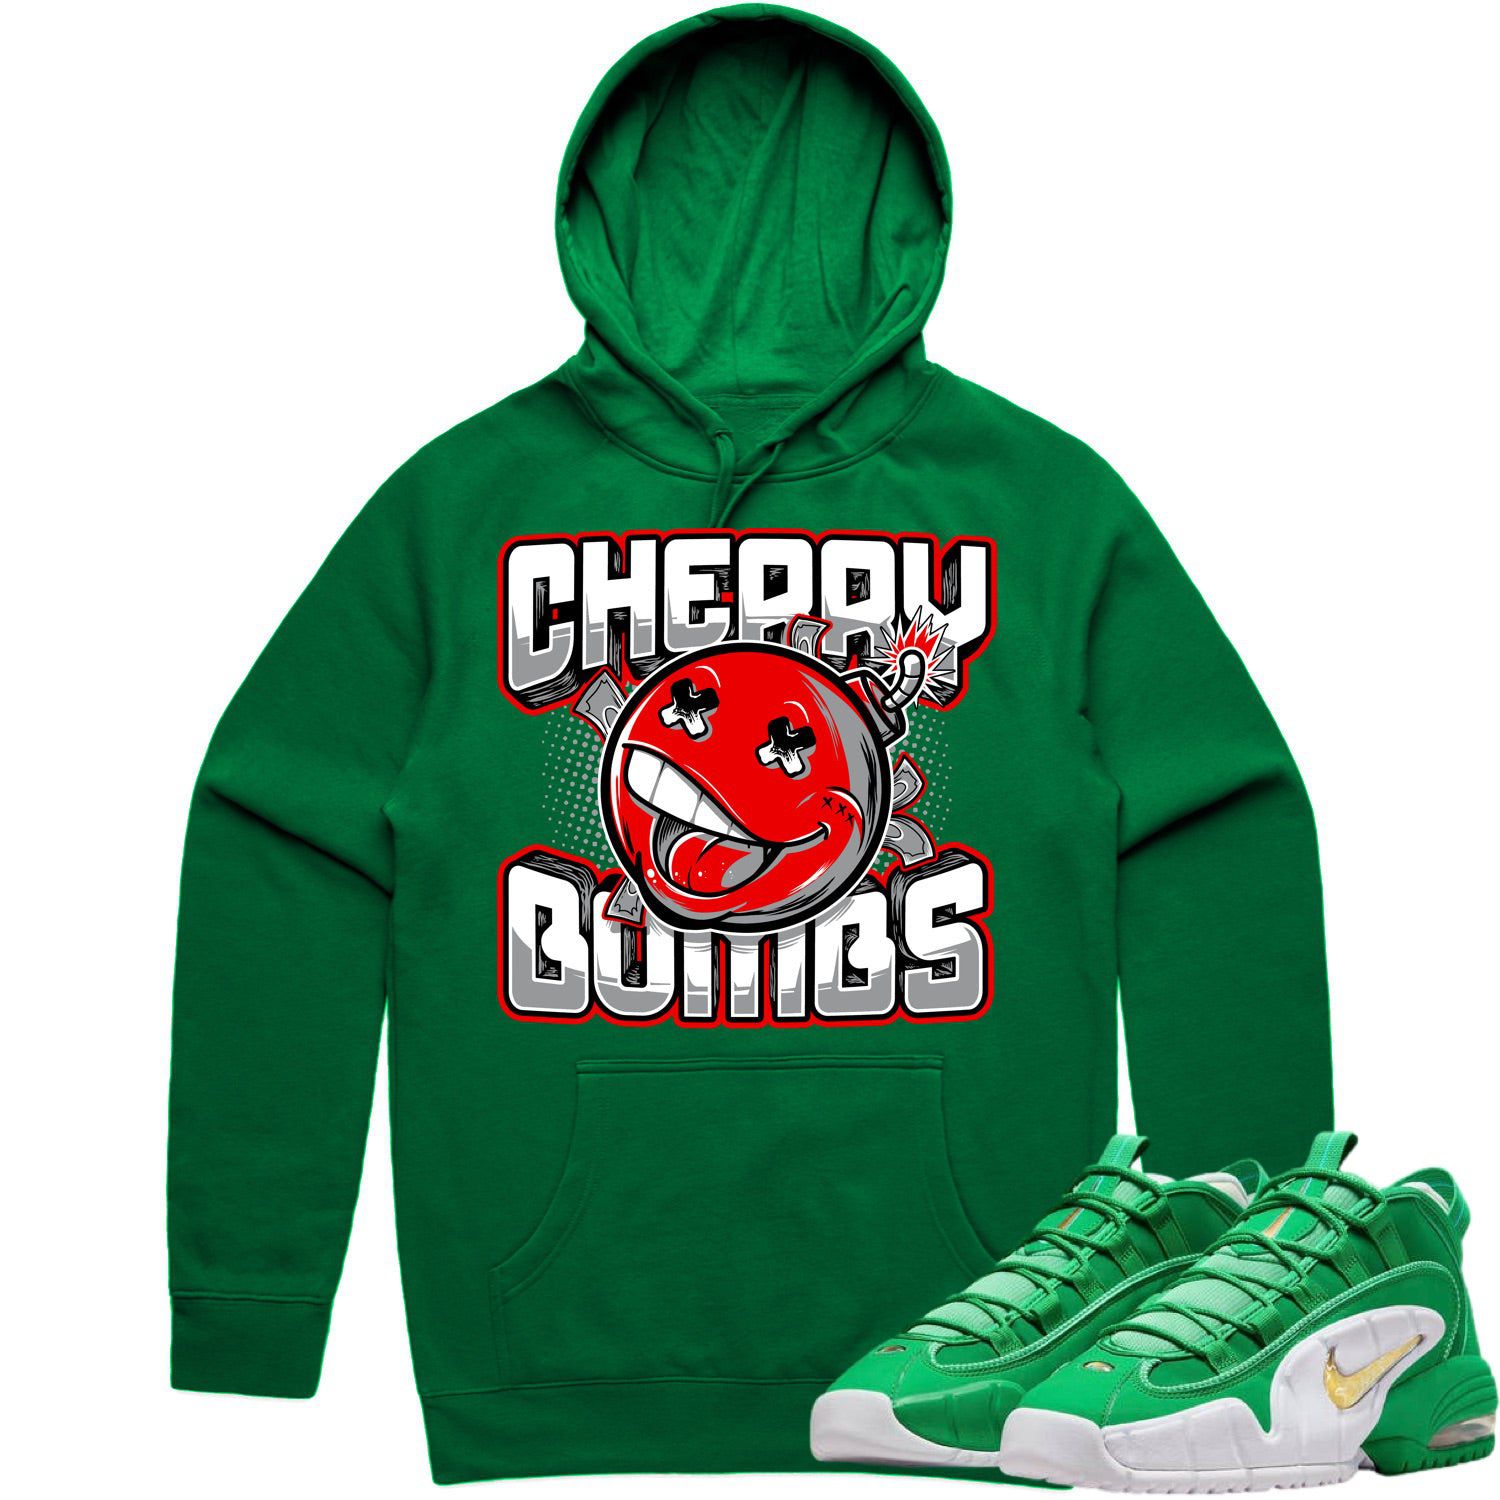 Penny 1 Stadium Green Hoodie - Penny 1s Hoodie - Cherry Bombs